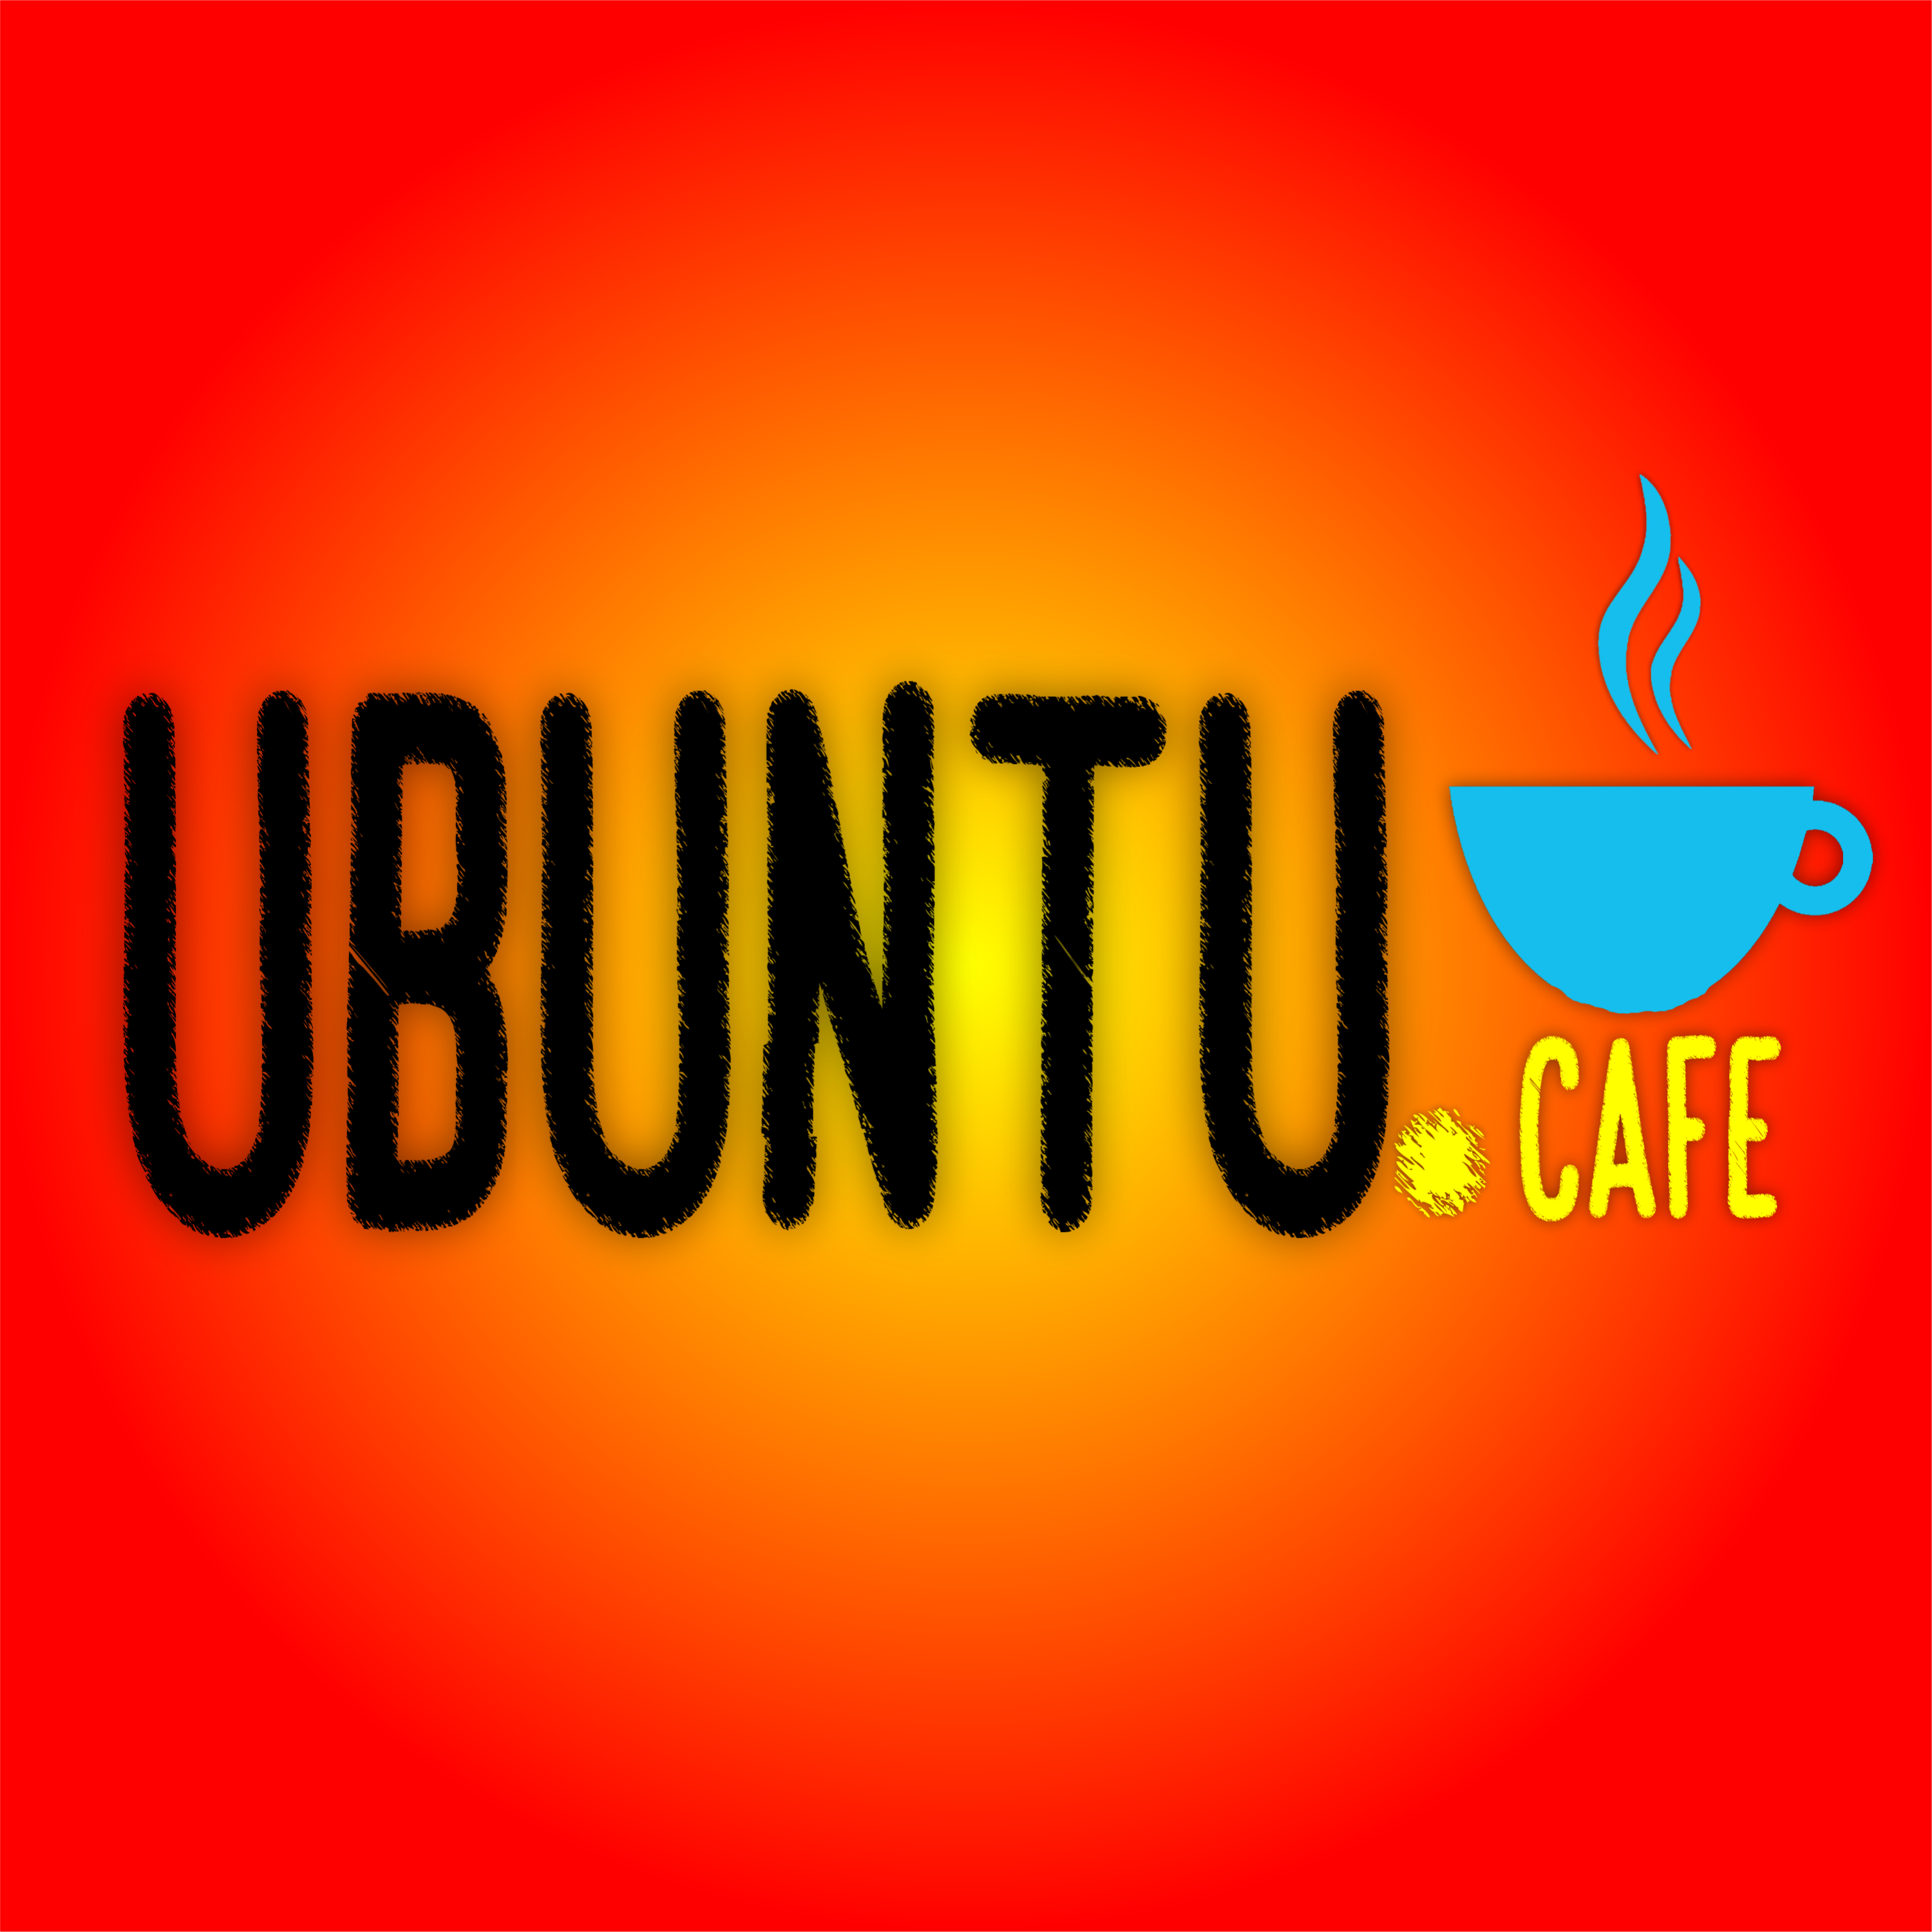 Ubuntu Cafe T2 C15: Miniteca Tridimension Volumen I